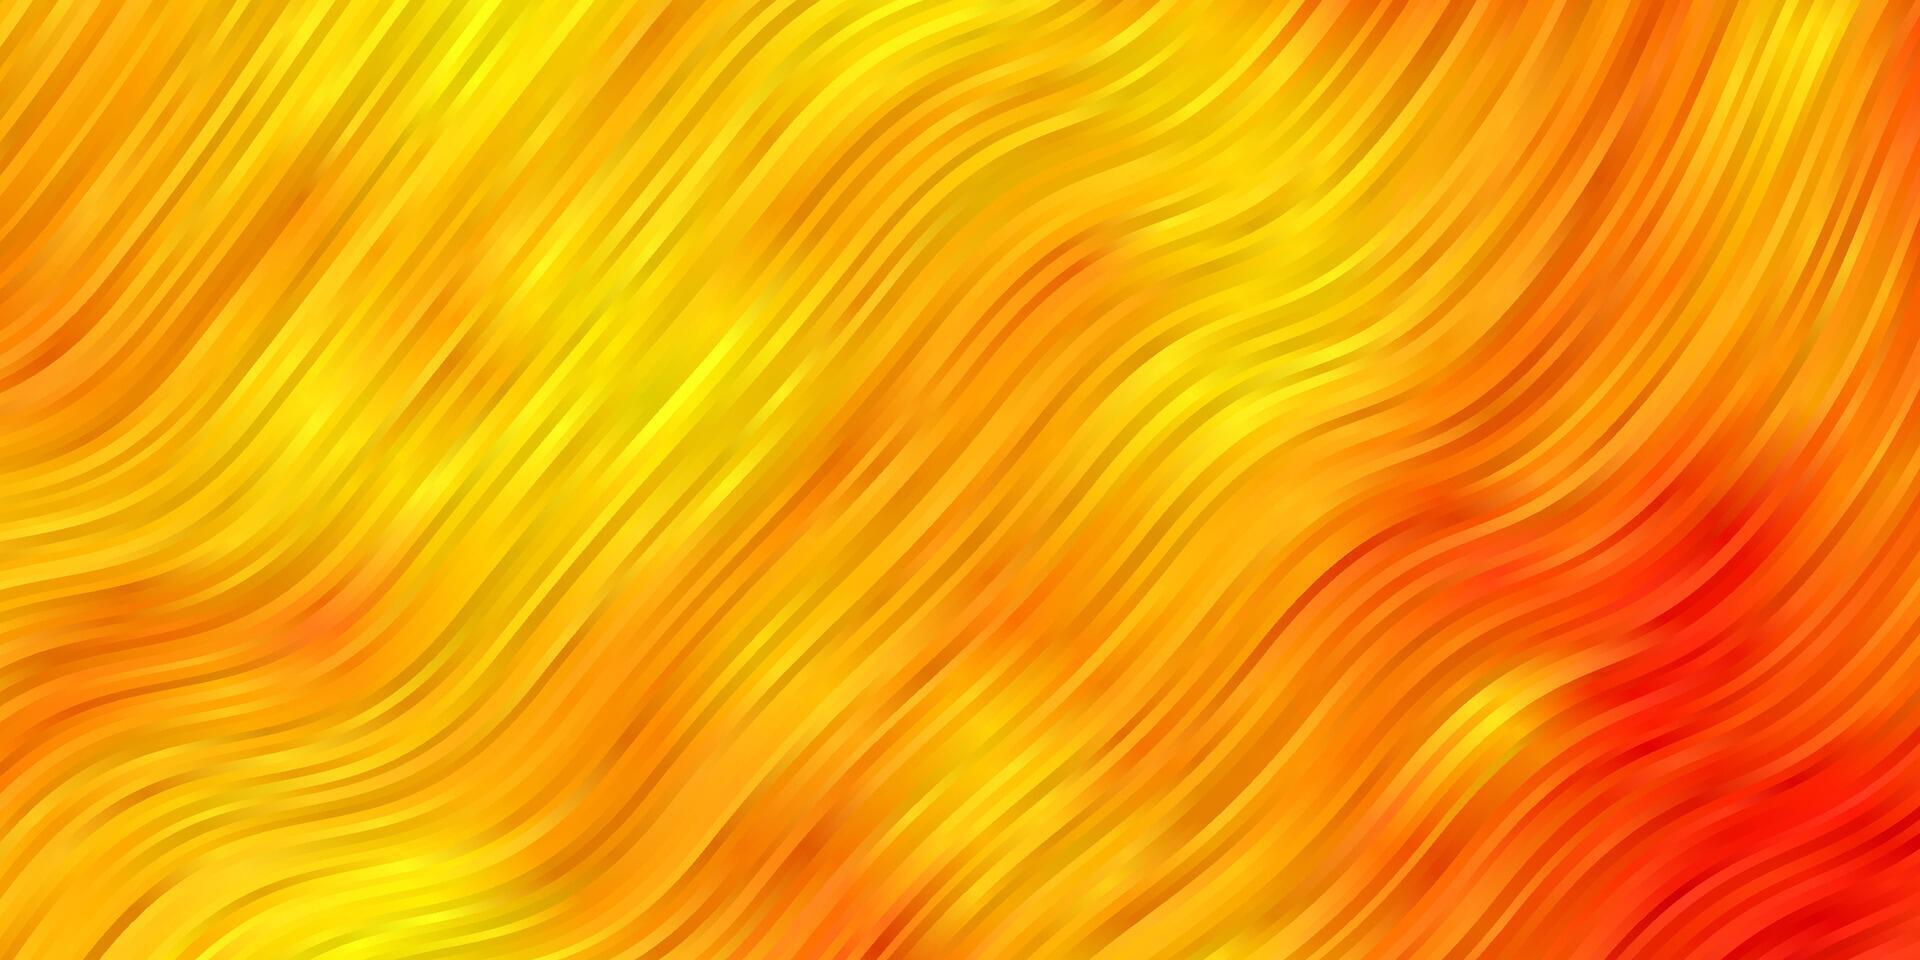 textura de vector amarillo oscuro con líneas torcidas.